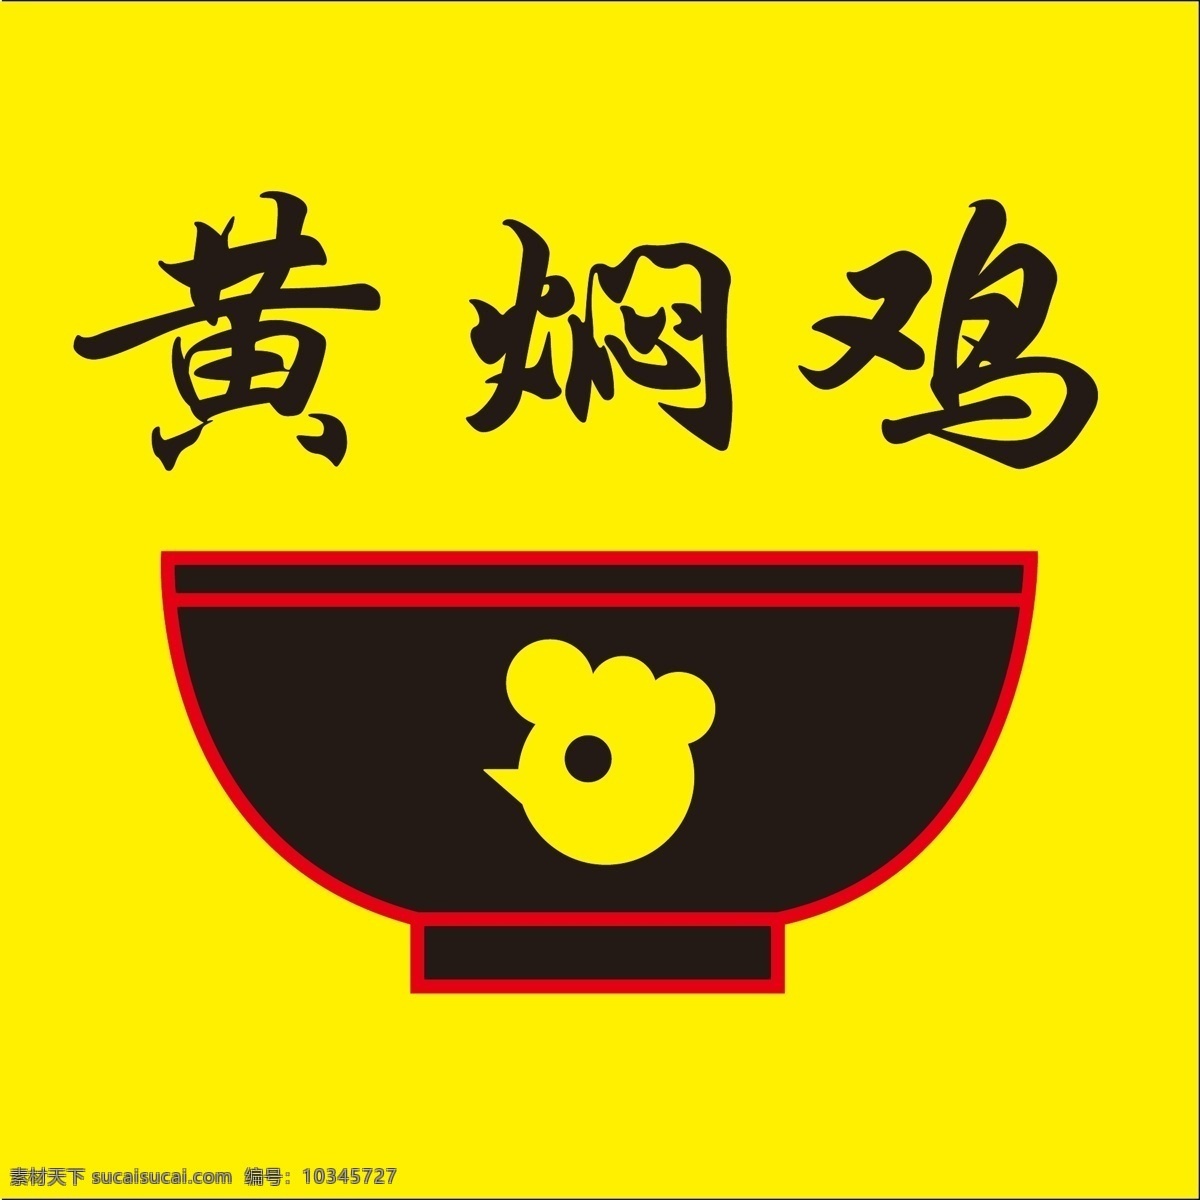 黄焖 鸡 logo 黄焖鸡 米饭 通用 矢量图